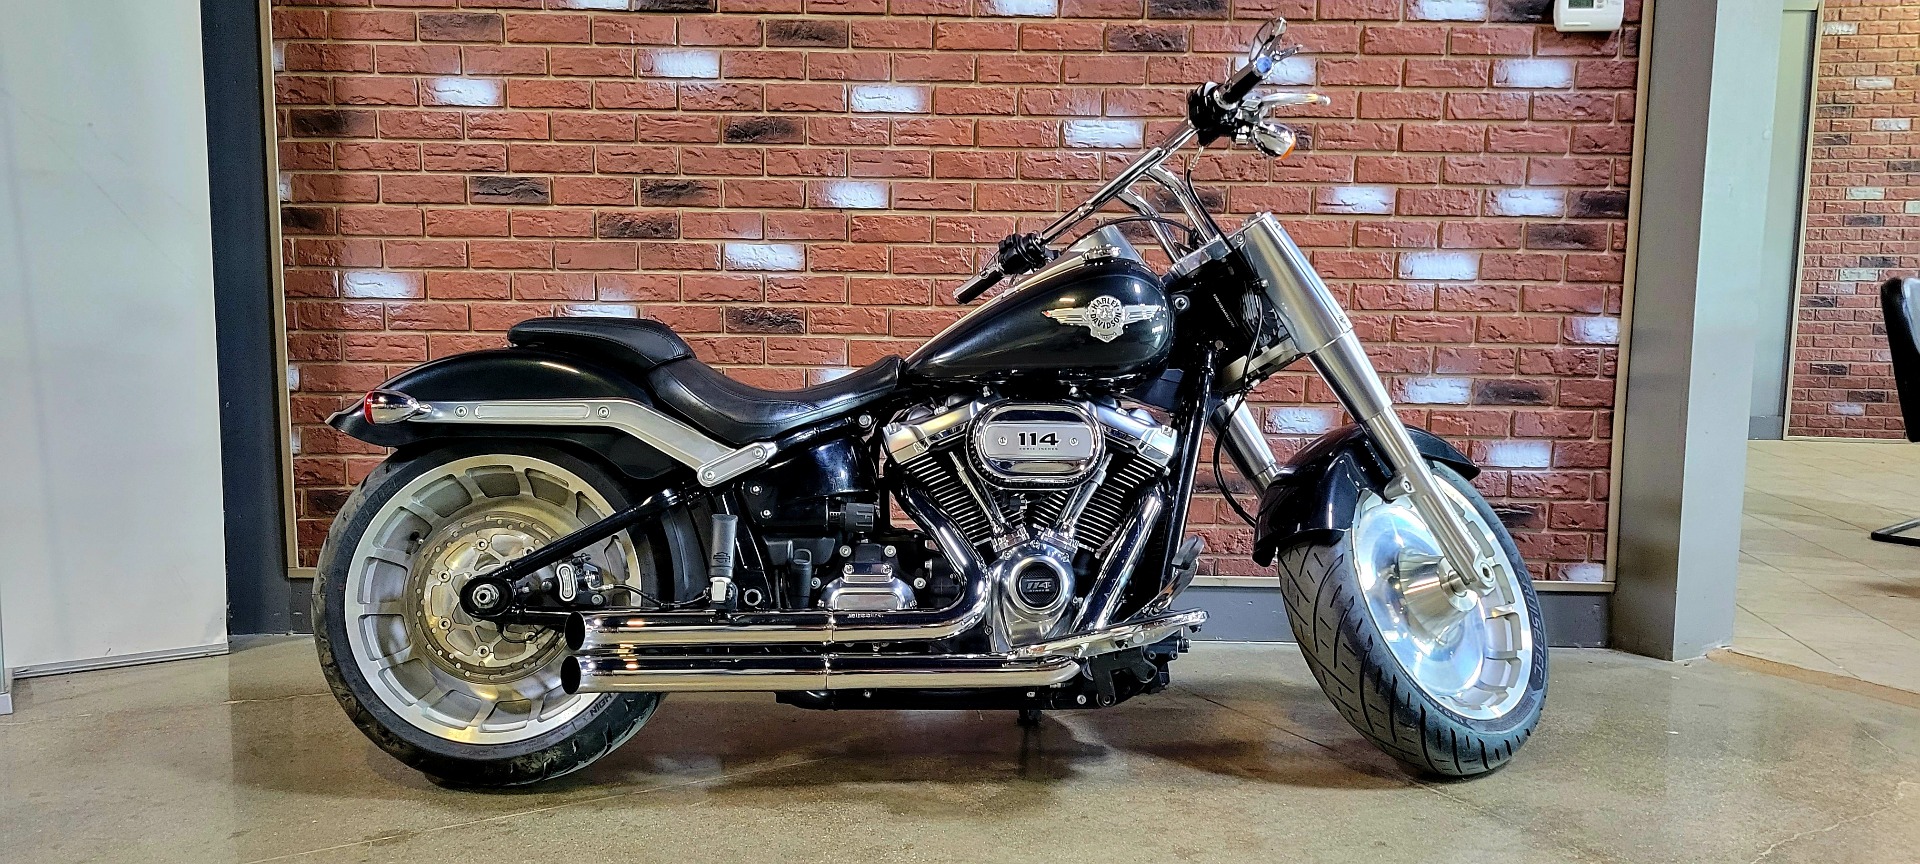 2018 Harley Davidson Fat Boy 114 Motorcycles For Sale In Lansing Mi Fullthrottlemotorsports Com